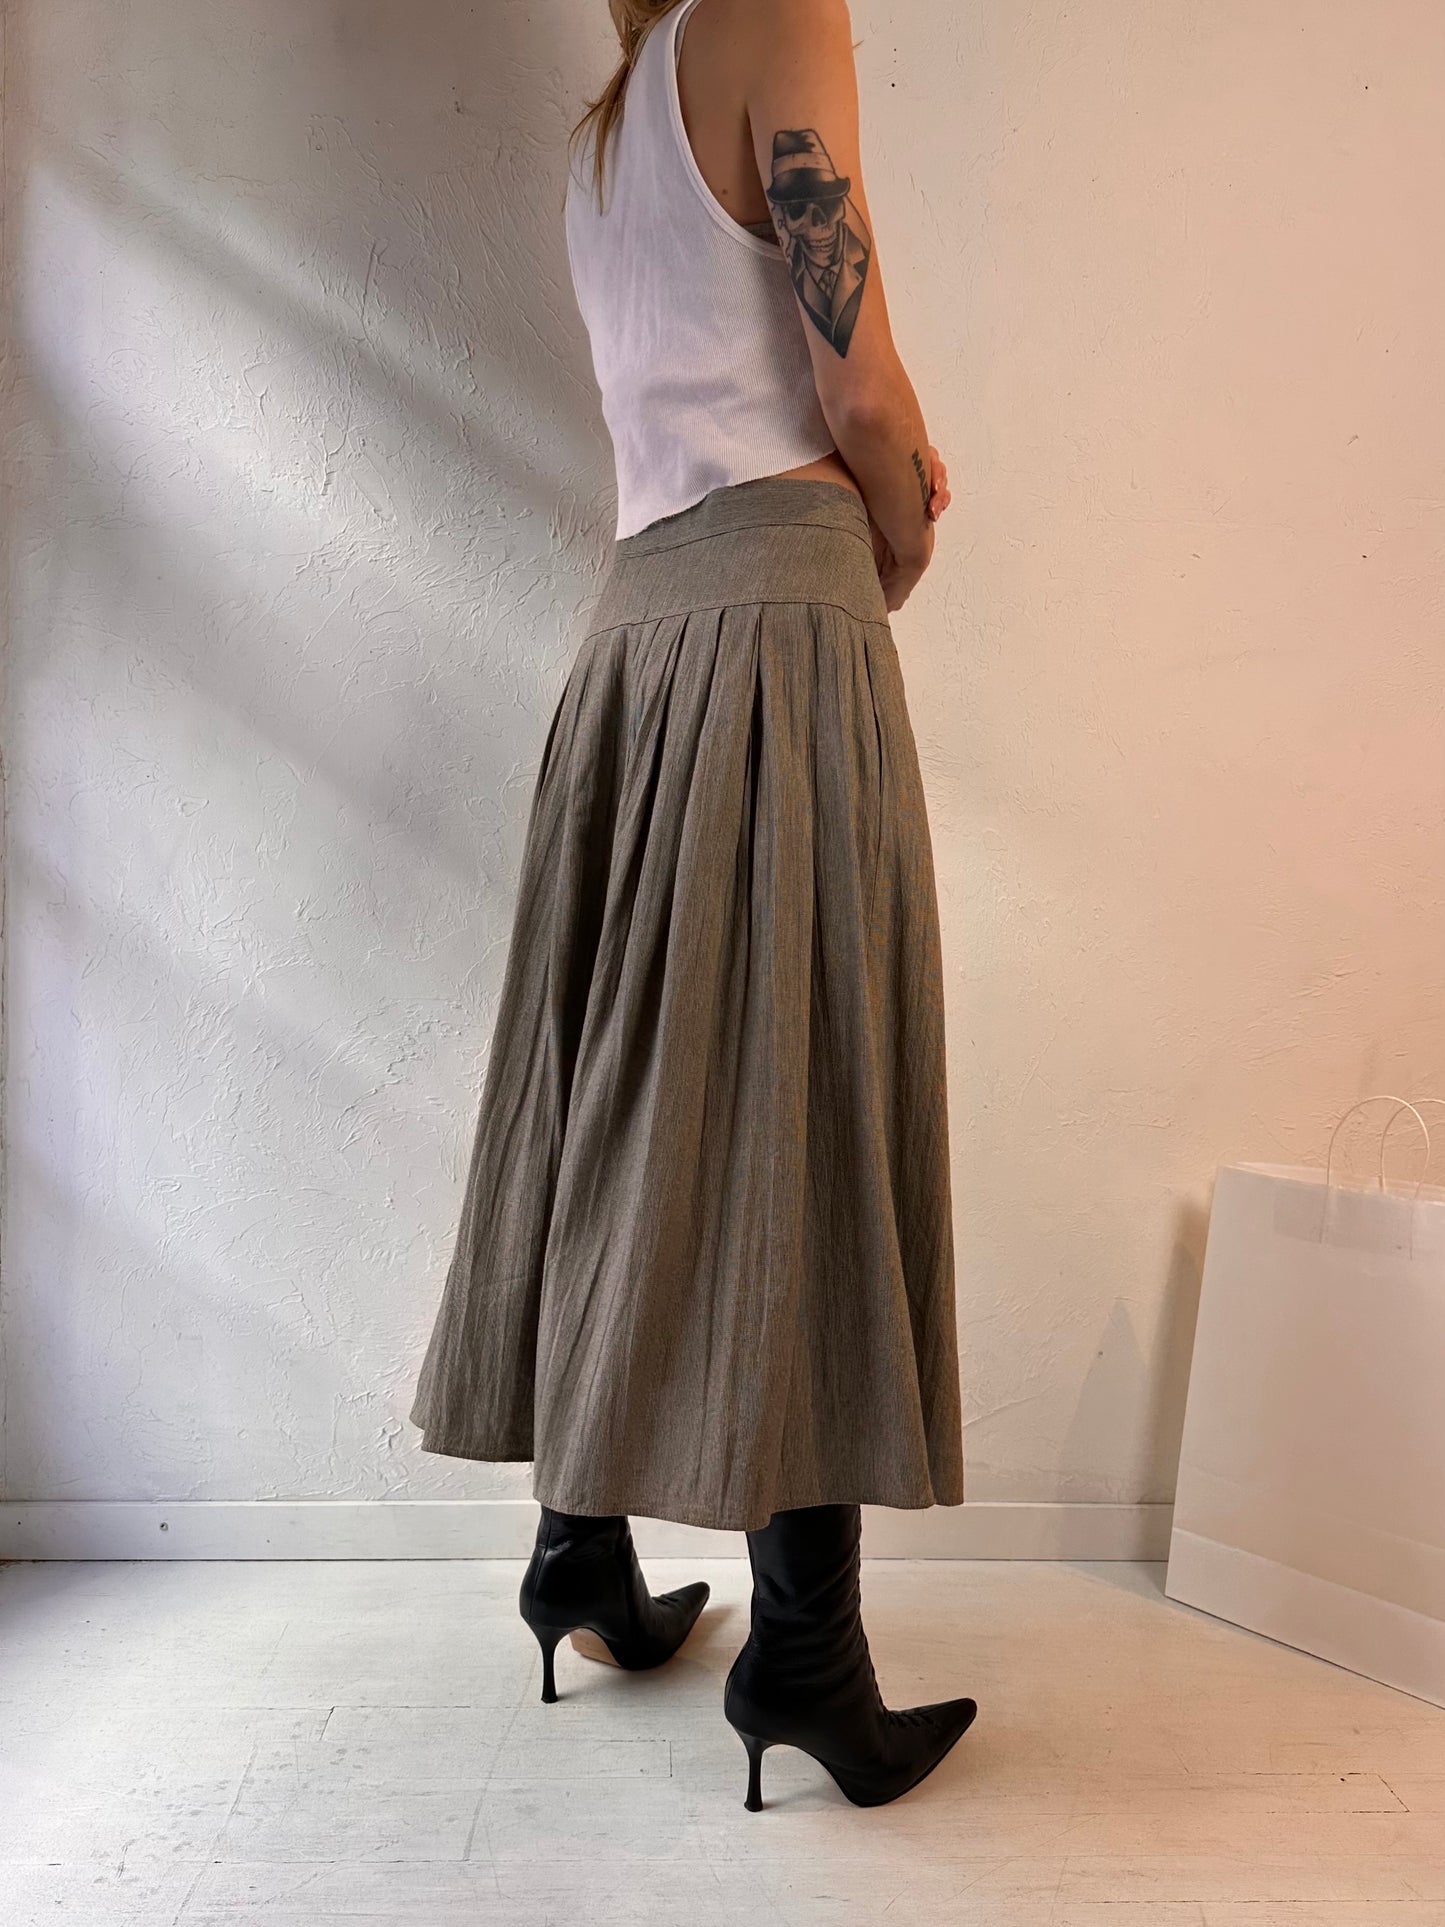 90s 'Steilmann' Button Up Skirt / Small